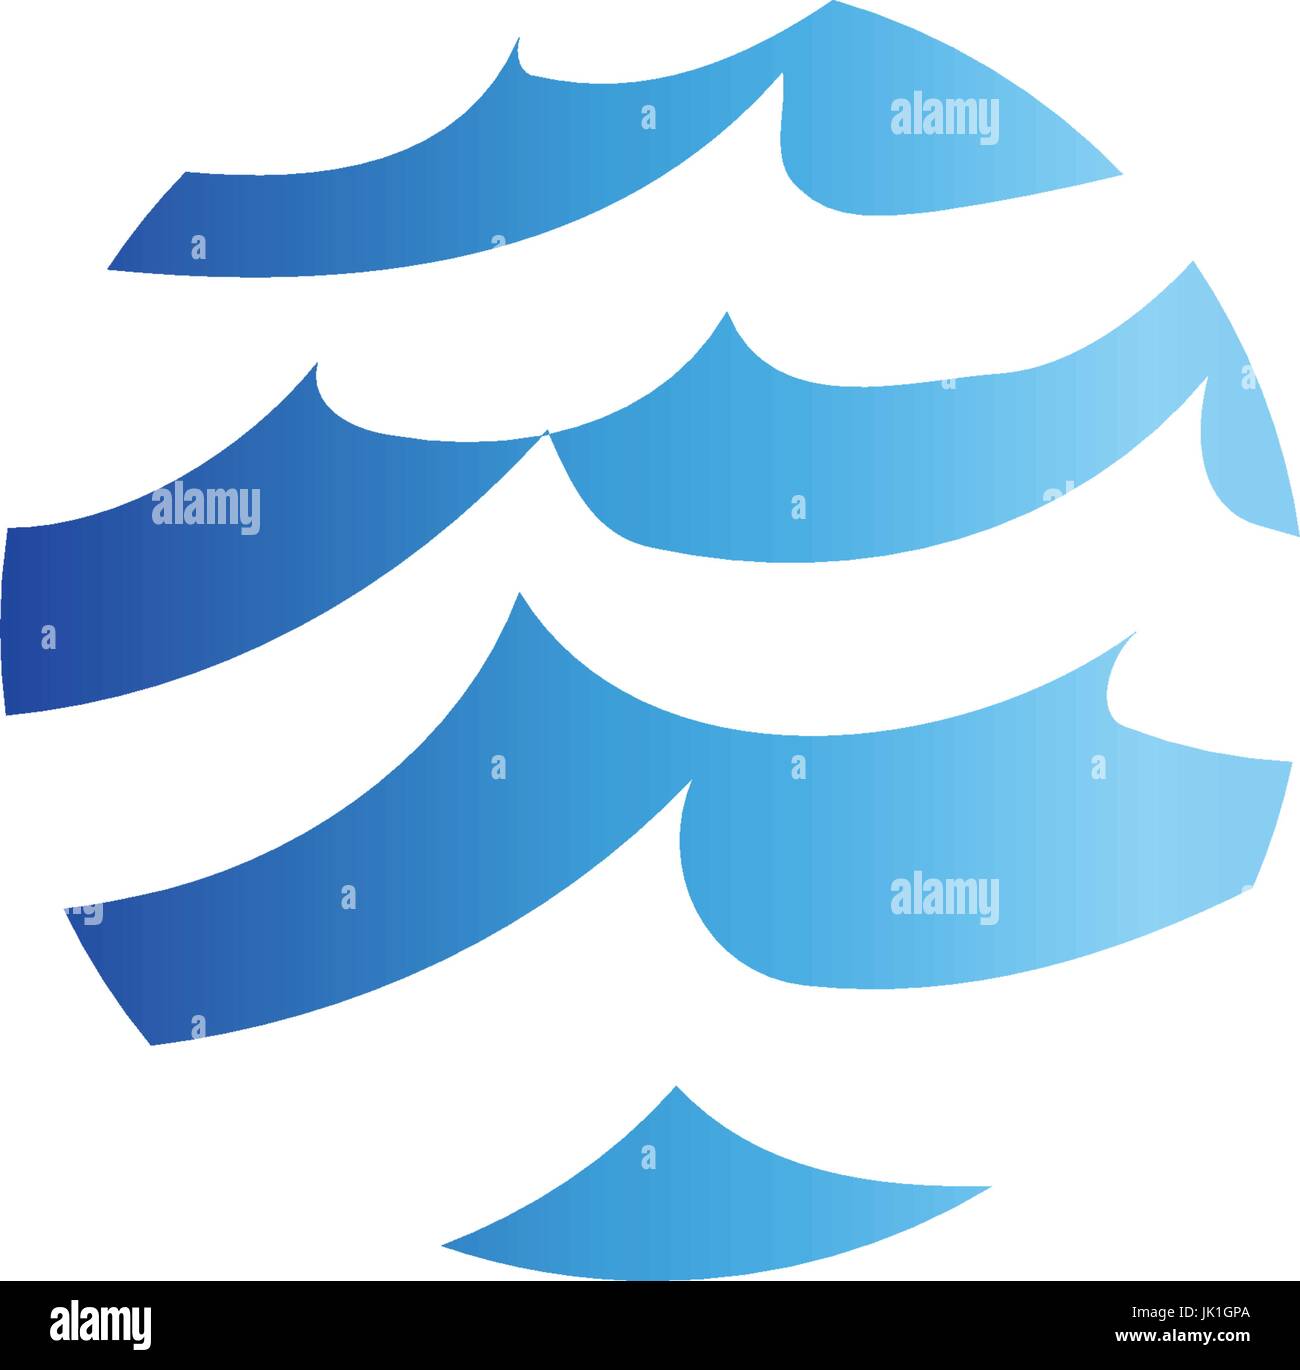 Abstract isolato di forma rotonda, di liquido di colore blu oceano onda, e sky, cloud logo. Acqua vettore stilizzati logotipo. Illustrazione Vettoriale